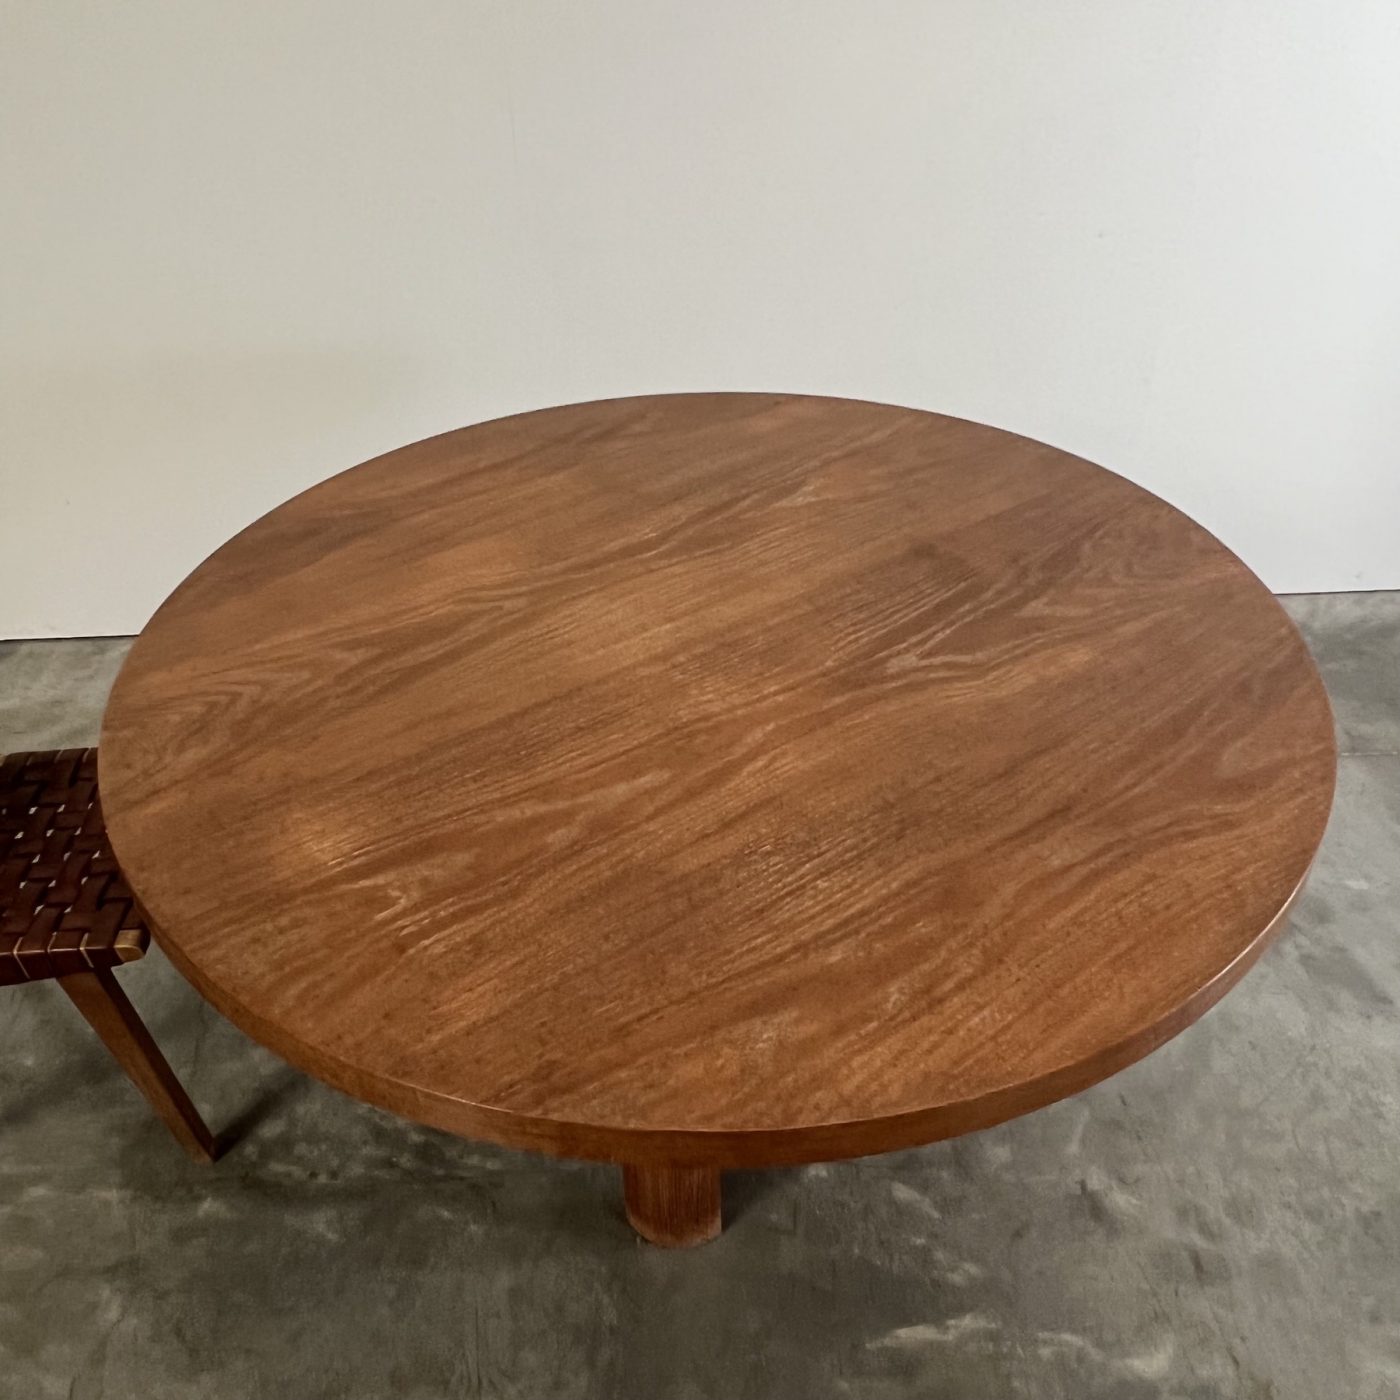 objet-vagabond-midcentury-table0006